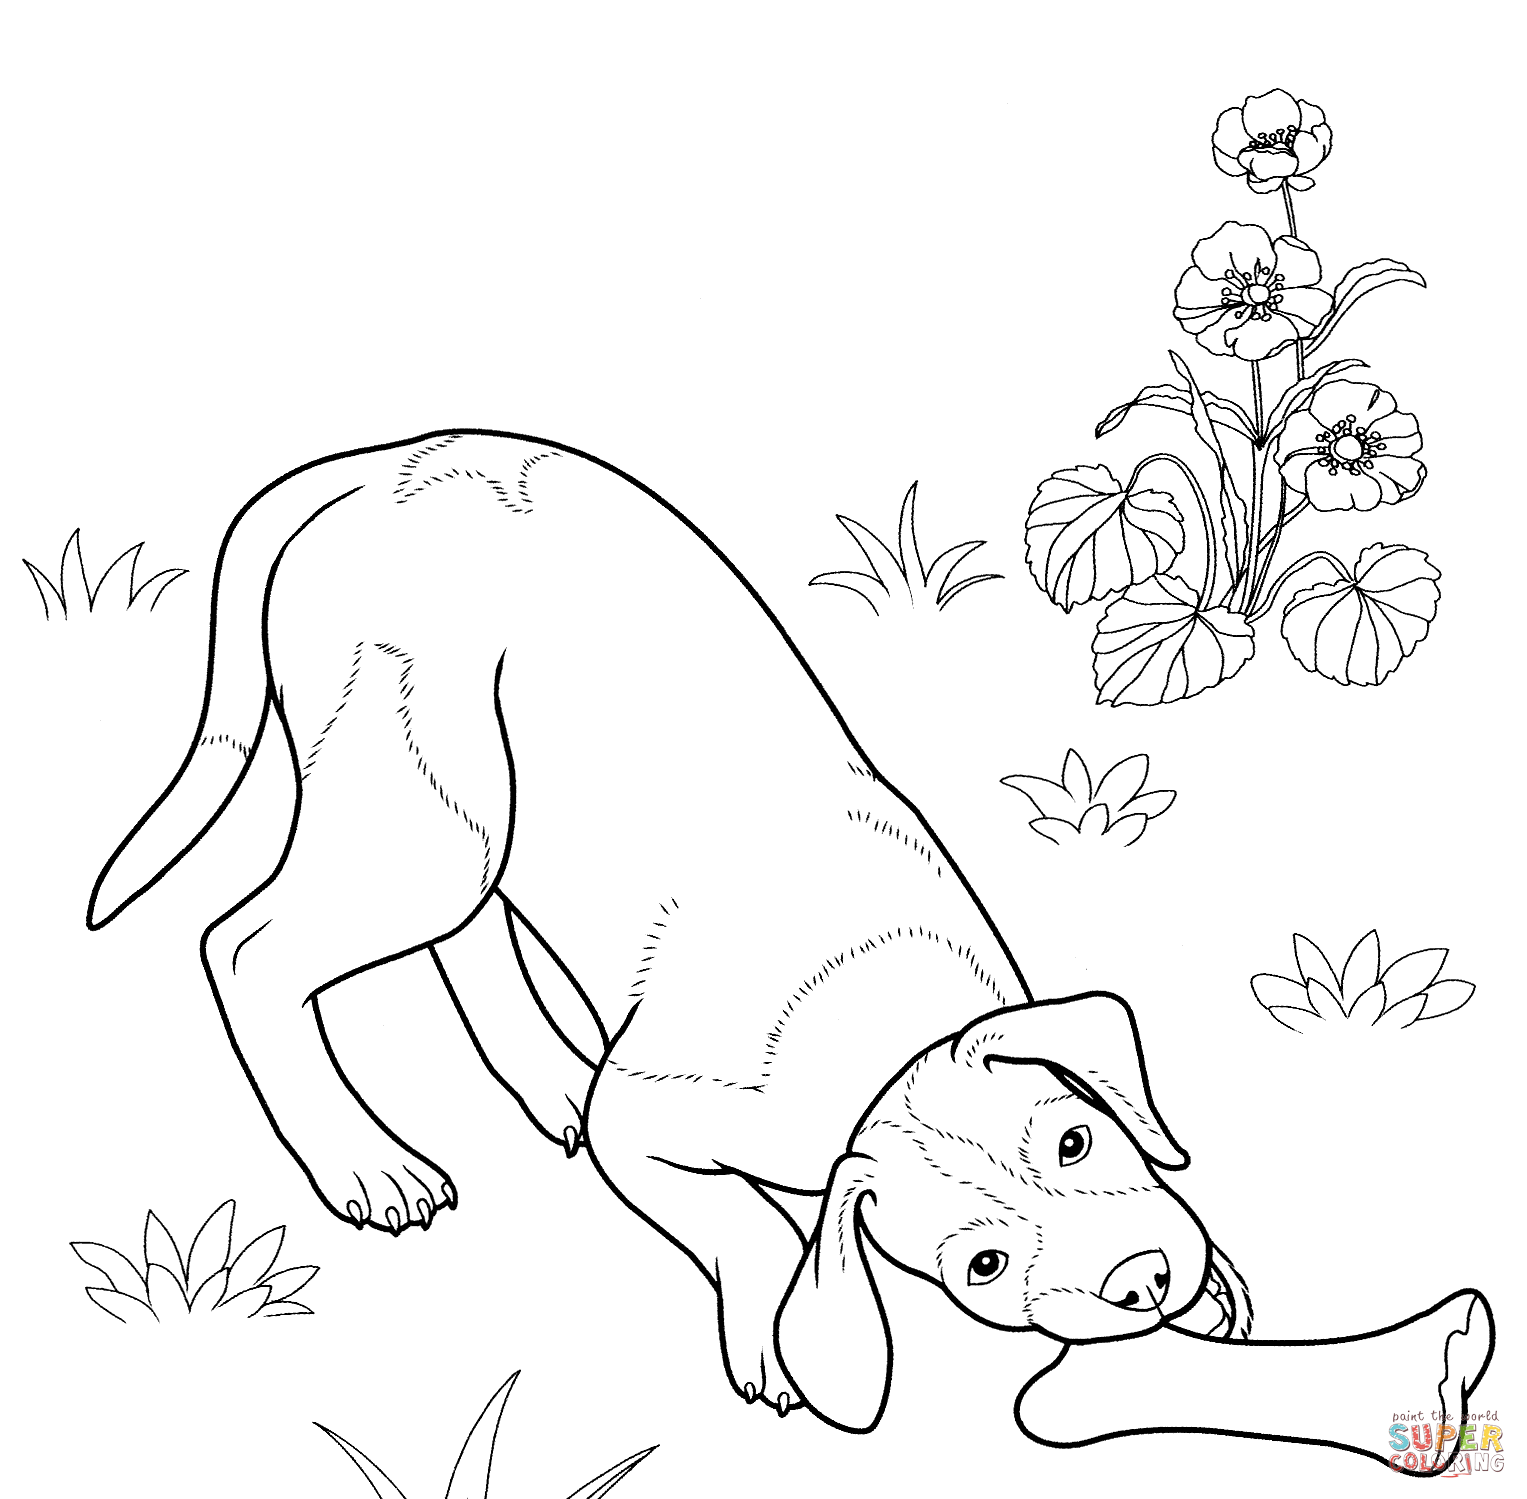 Deutscher Schaeferhund coloring #5, Download drawings